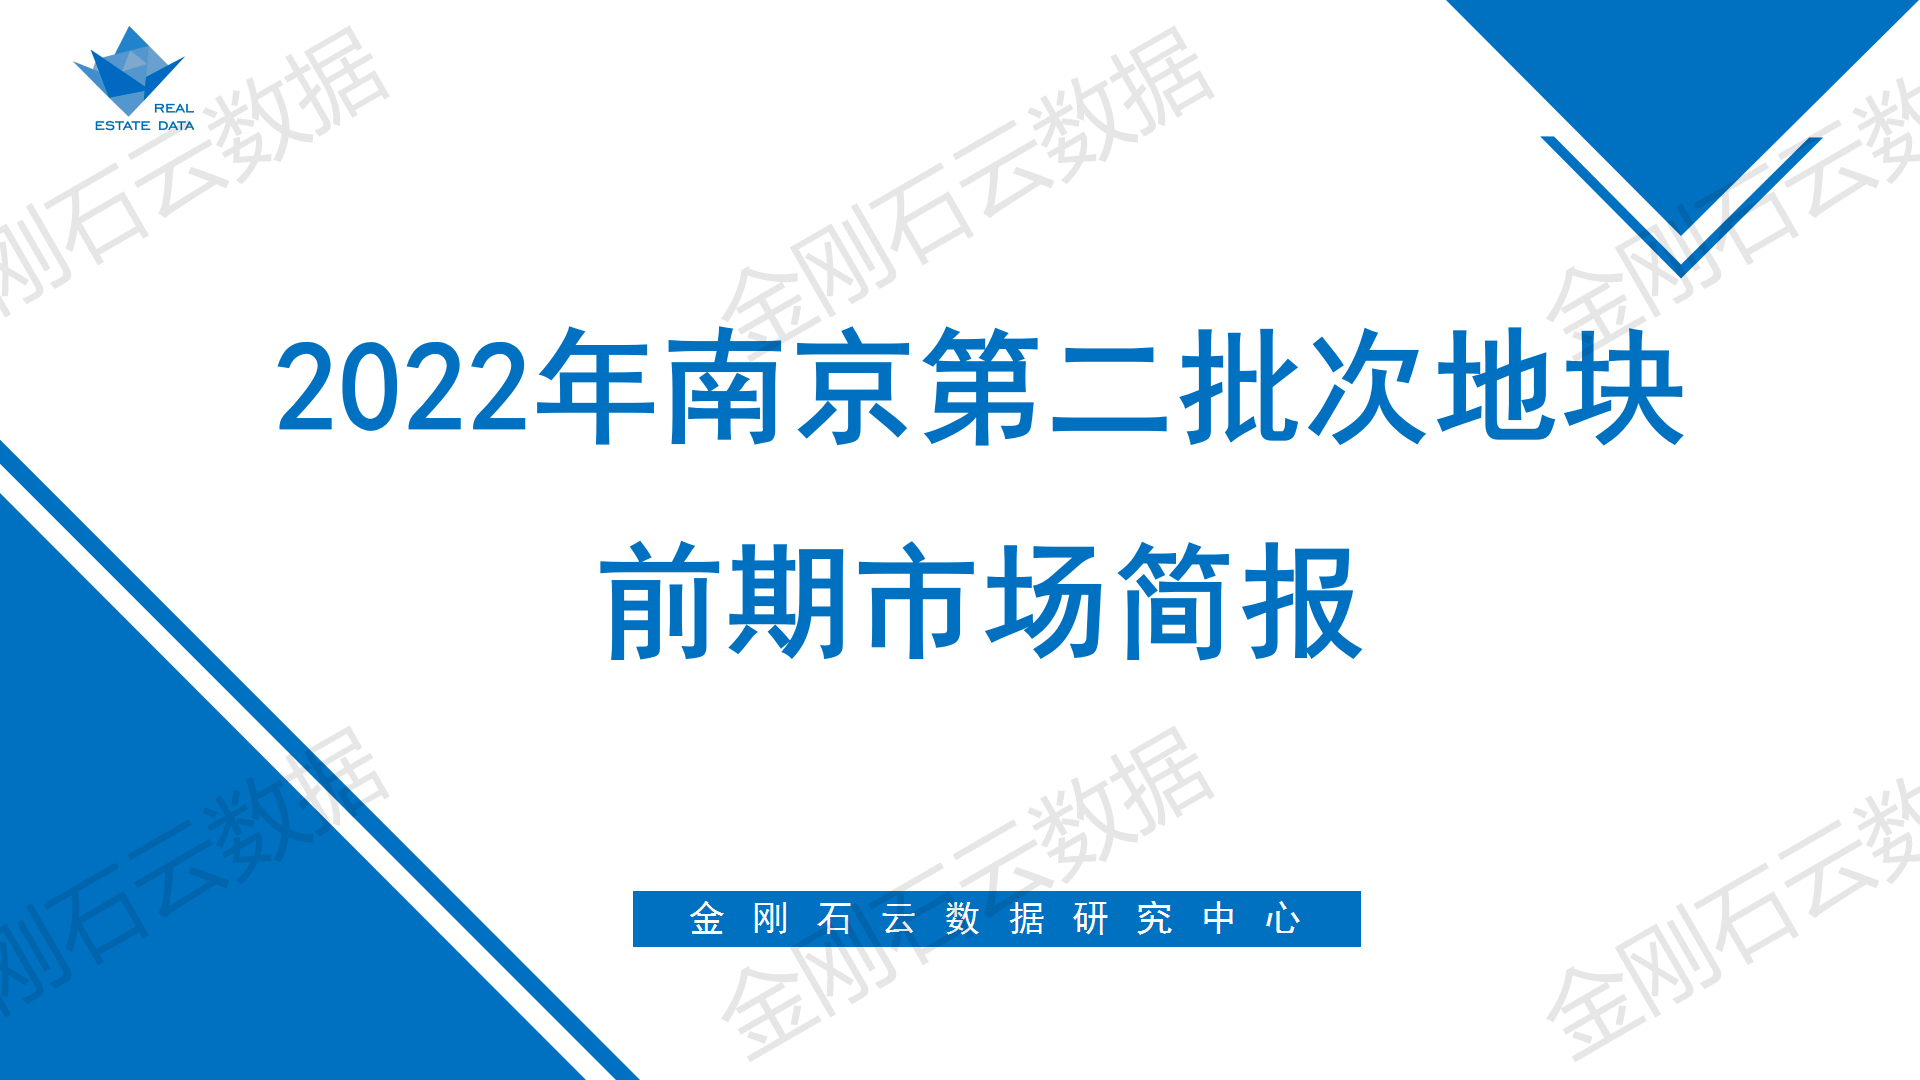 2022年南京第二批次地块 前期市场简报(图1)